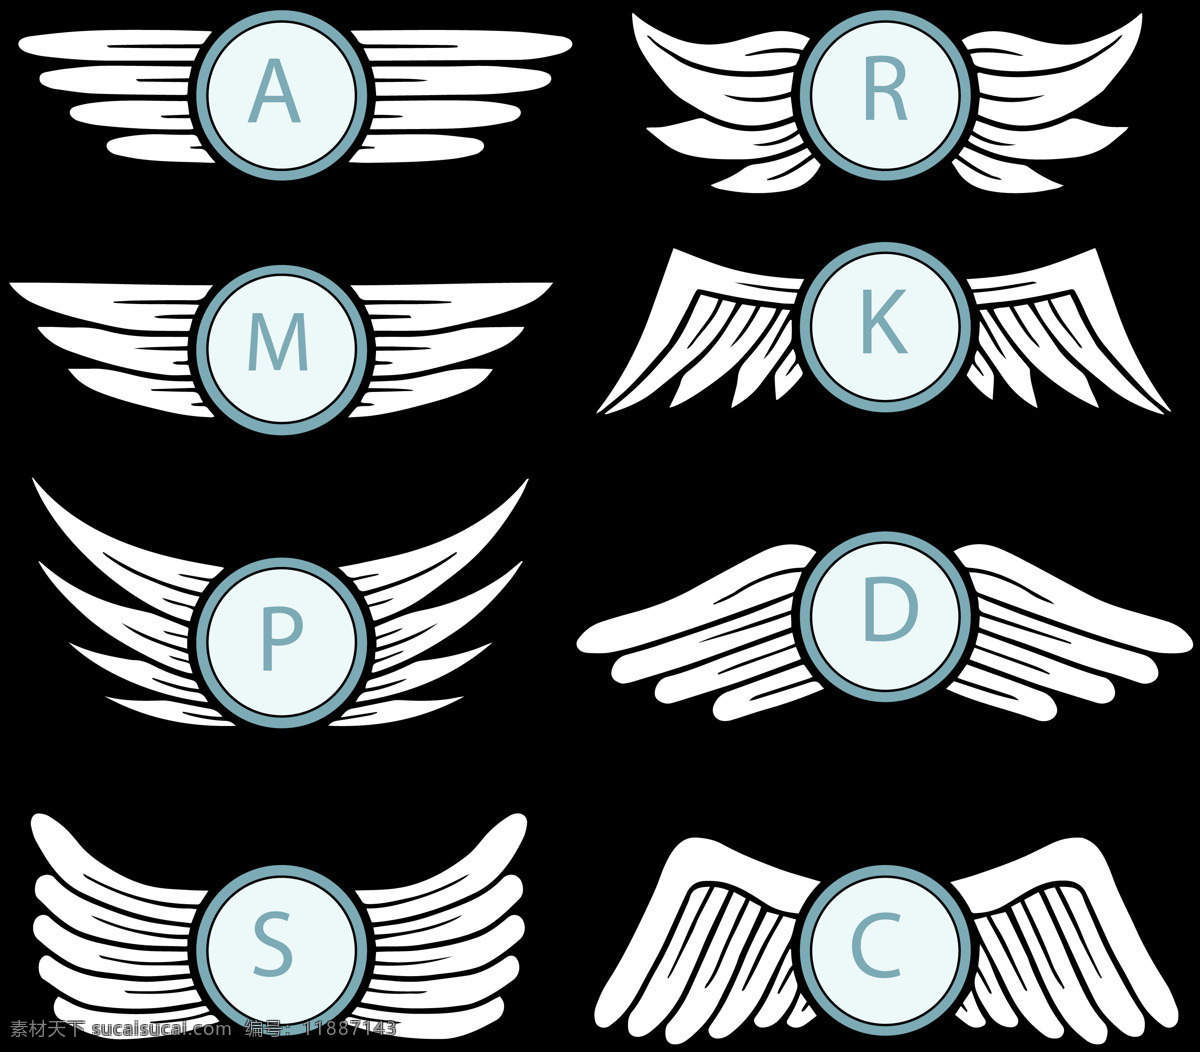 各种 形状 卡通 翅膀 免 抠 透明 图 层 手绘翅膀 翅膀元素 小 天使 卡通翅膀 翅膀图片素材 纹身图案 翅膀素材 手绘翅膀图片